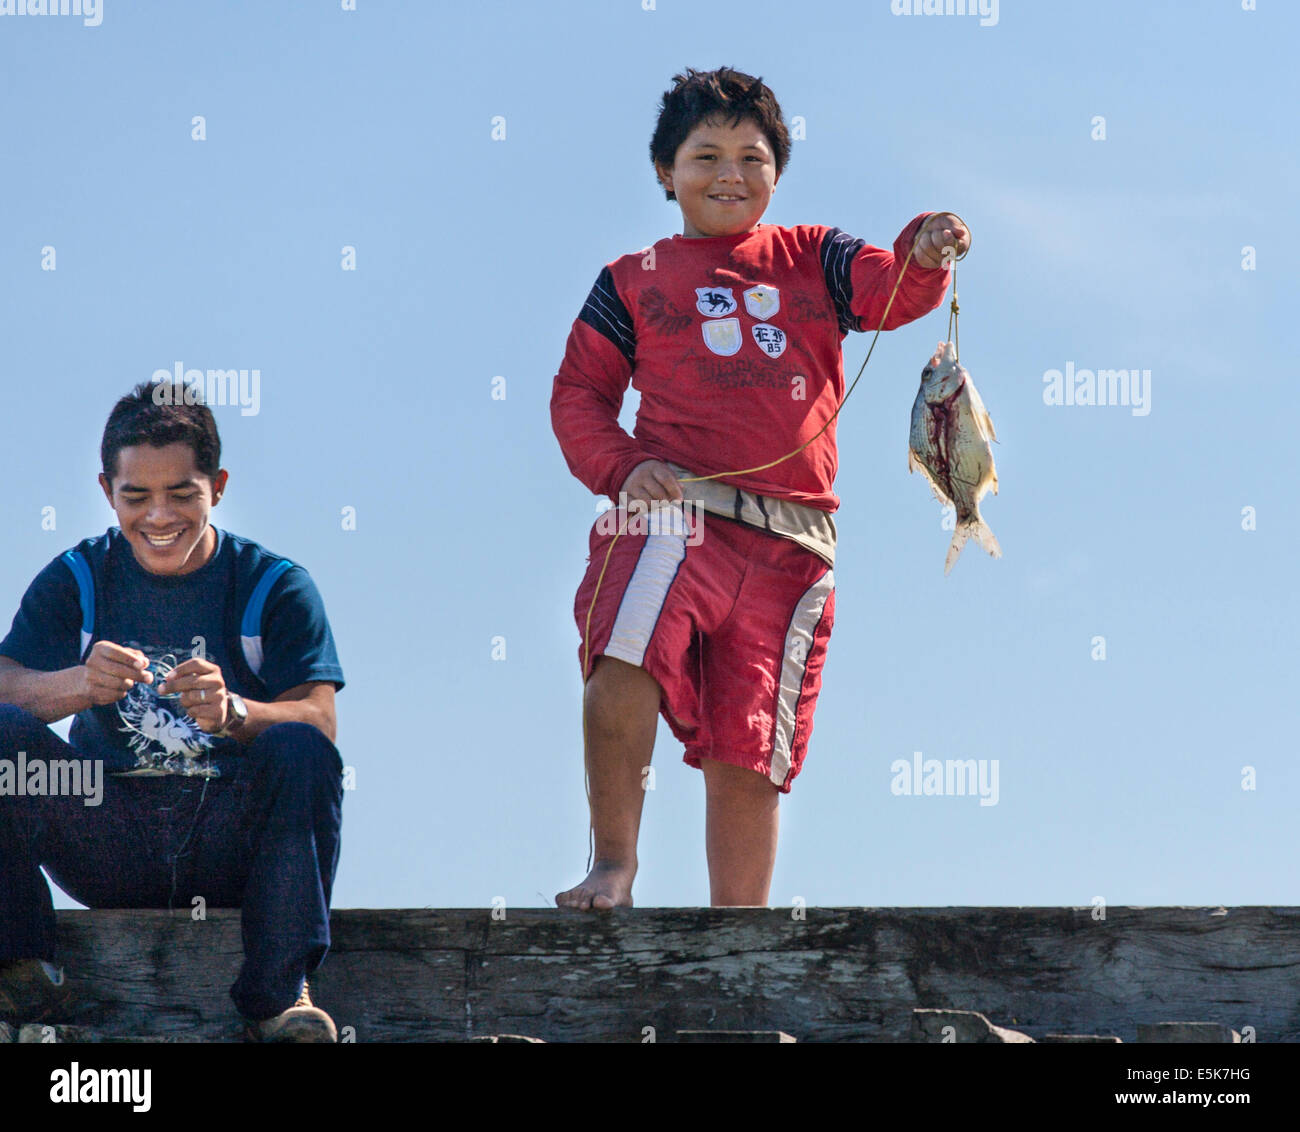 La visualizzazione delle catture. Un ragazzo visualizza un solo pesce pescato mentre un altro ragazzo ride. Entrambi sono sul bordo di un ponte di legno Foto Stock